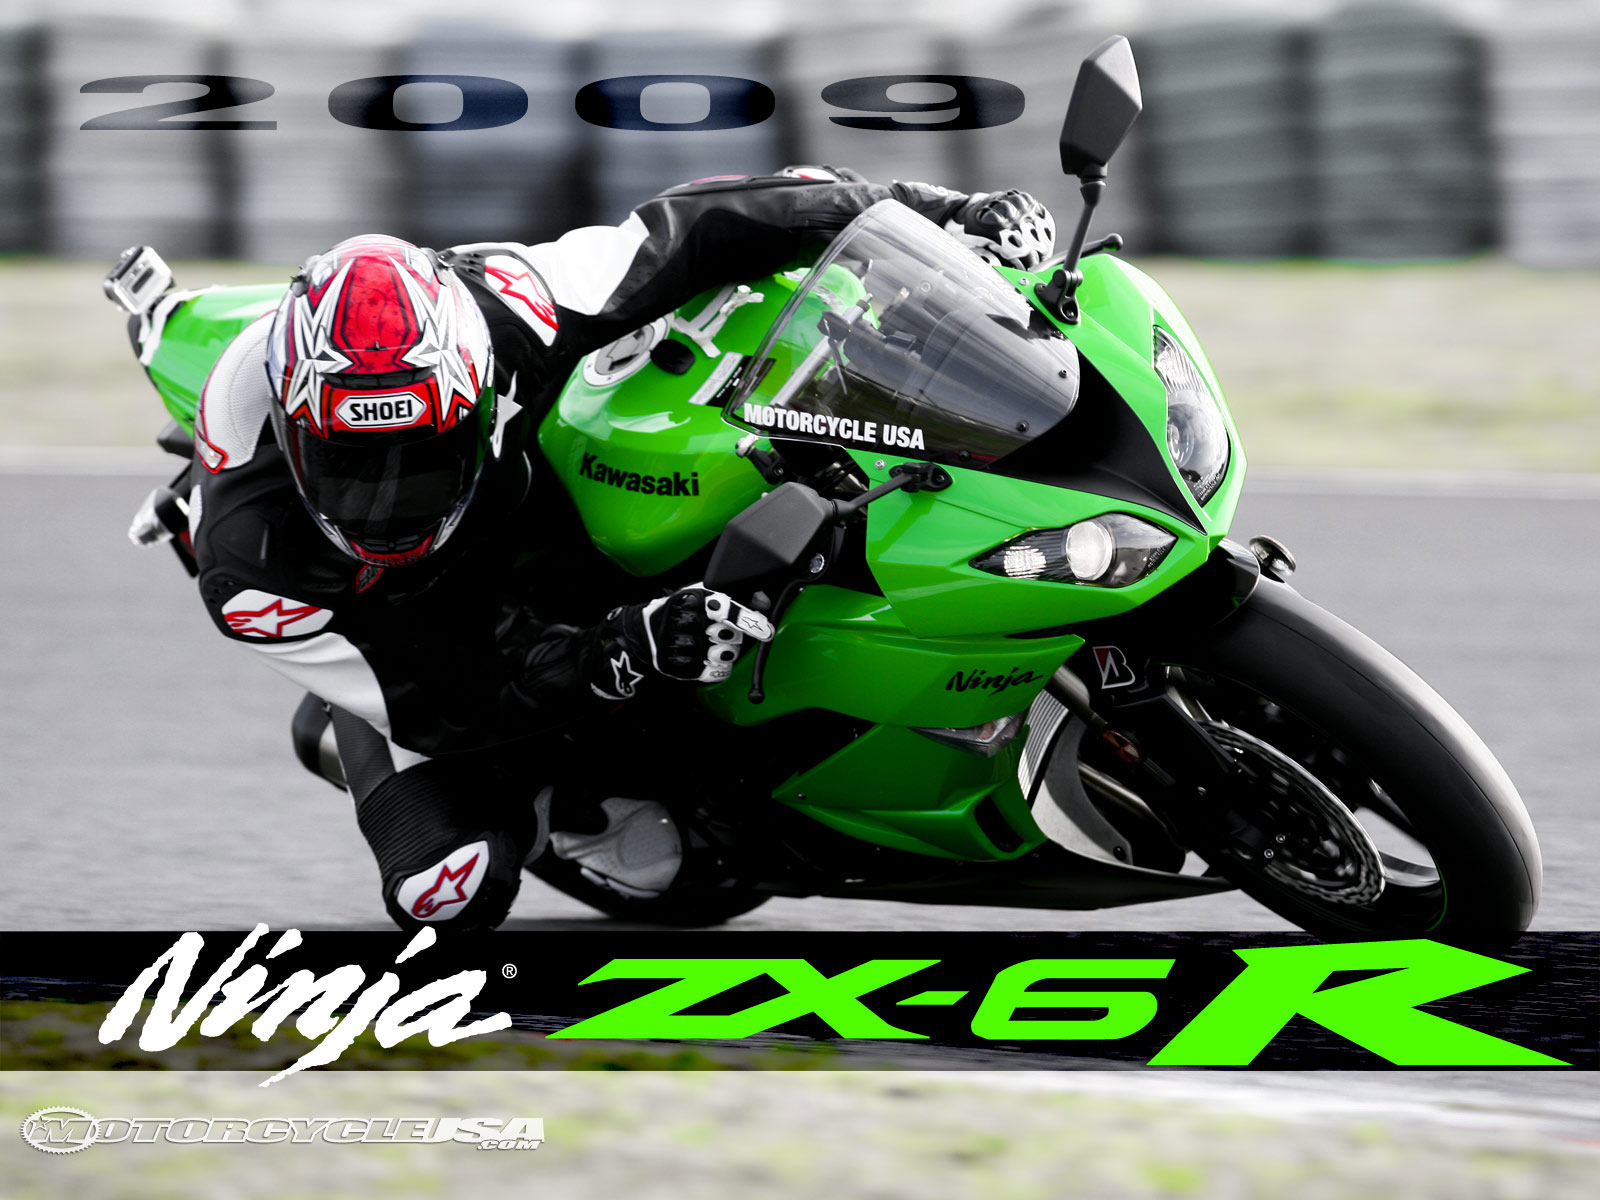 2009款川崎Ninja ZX-6R摩托车图片1